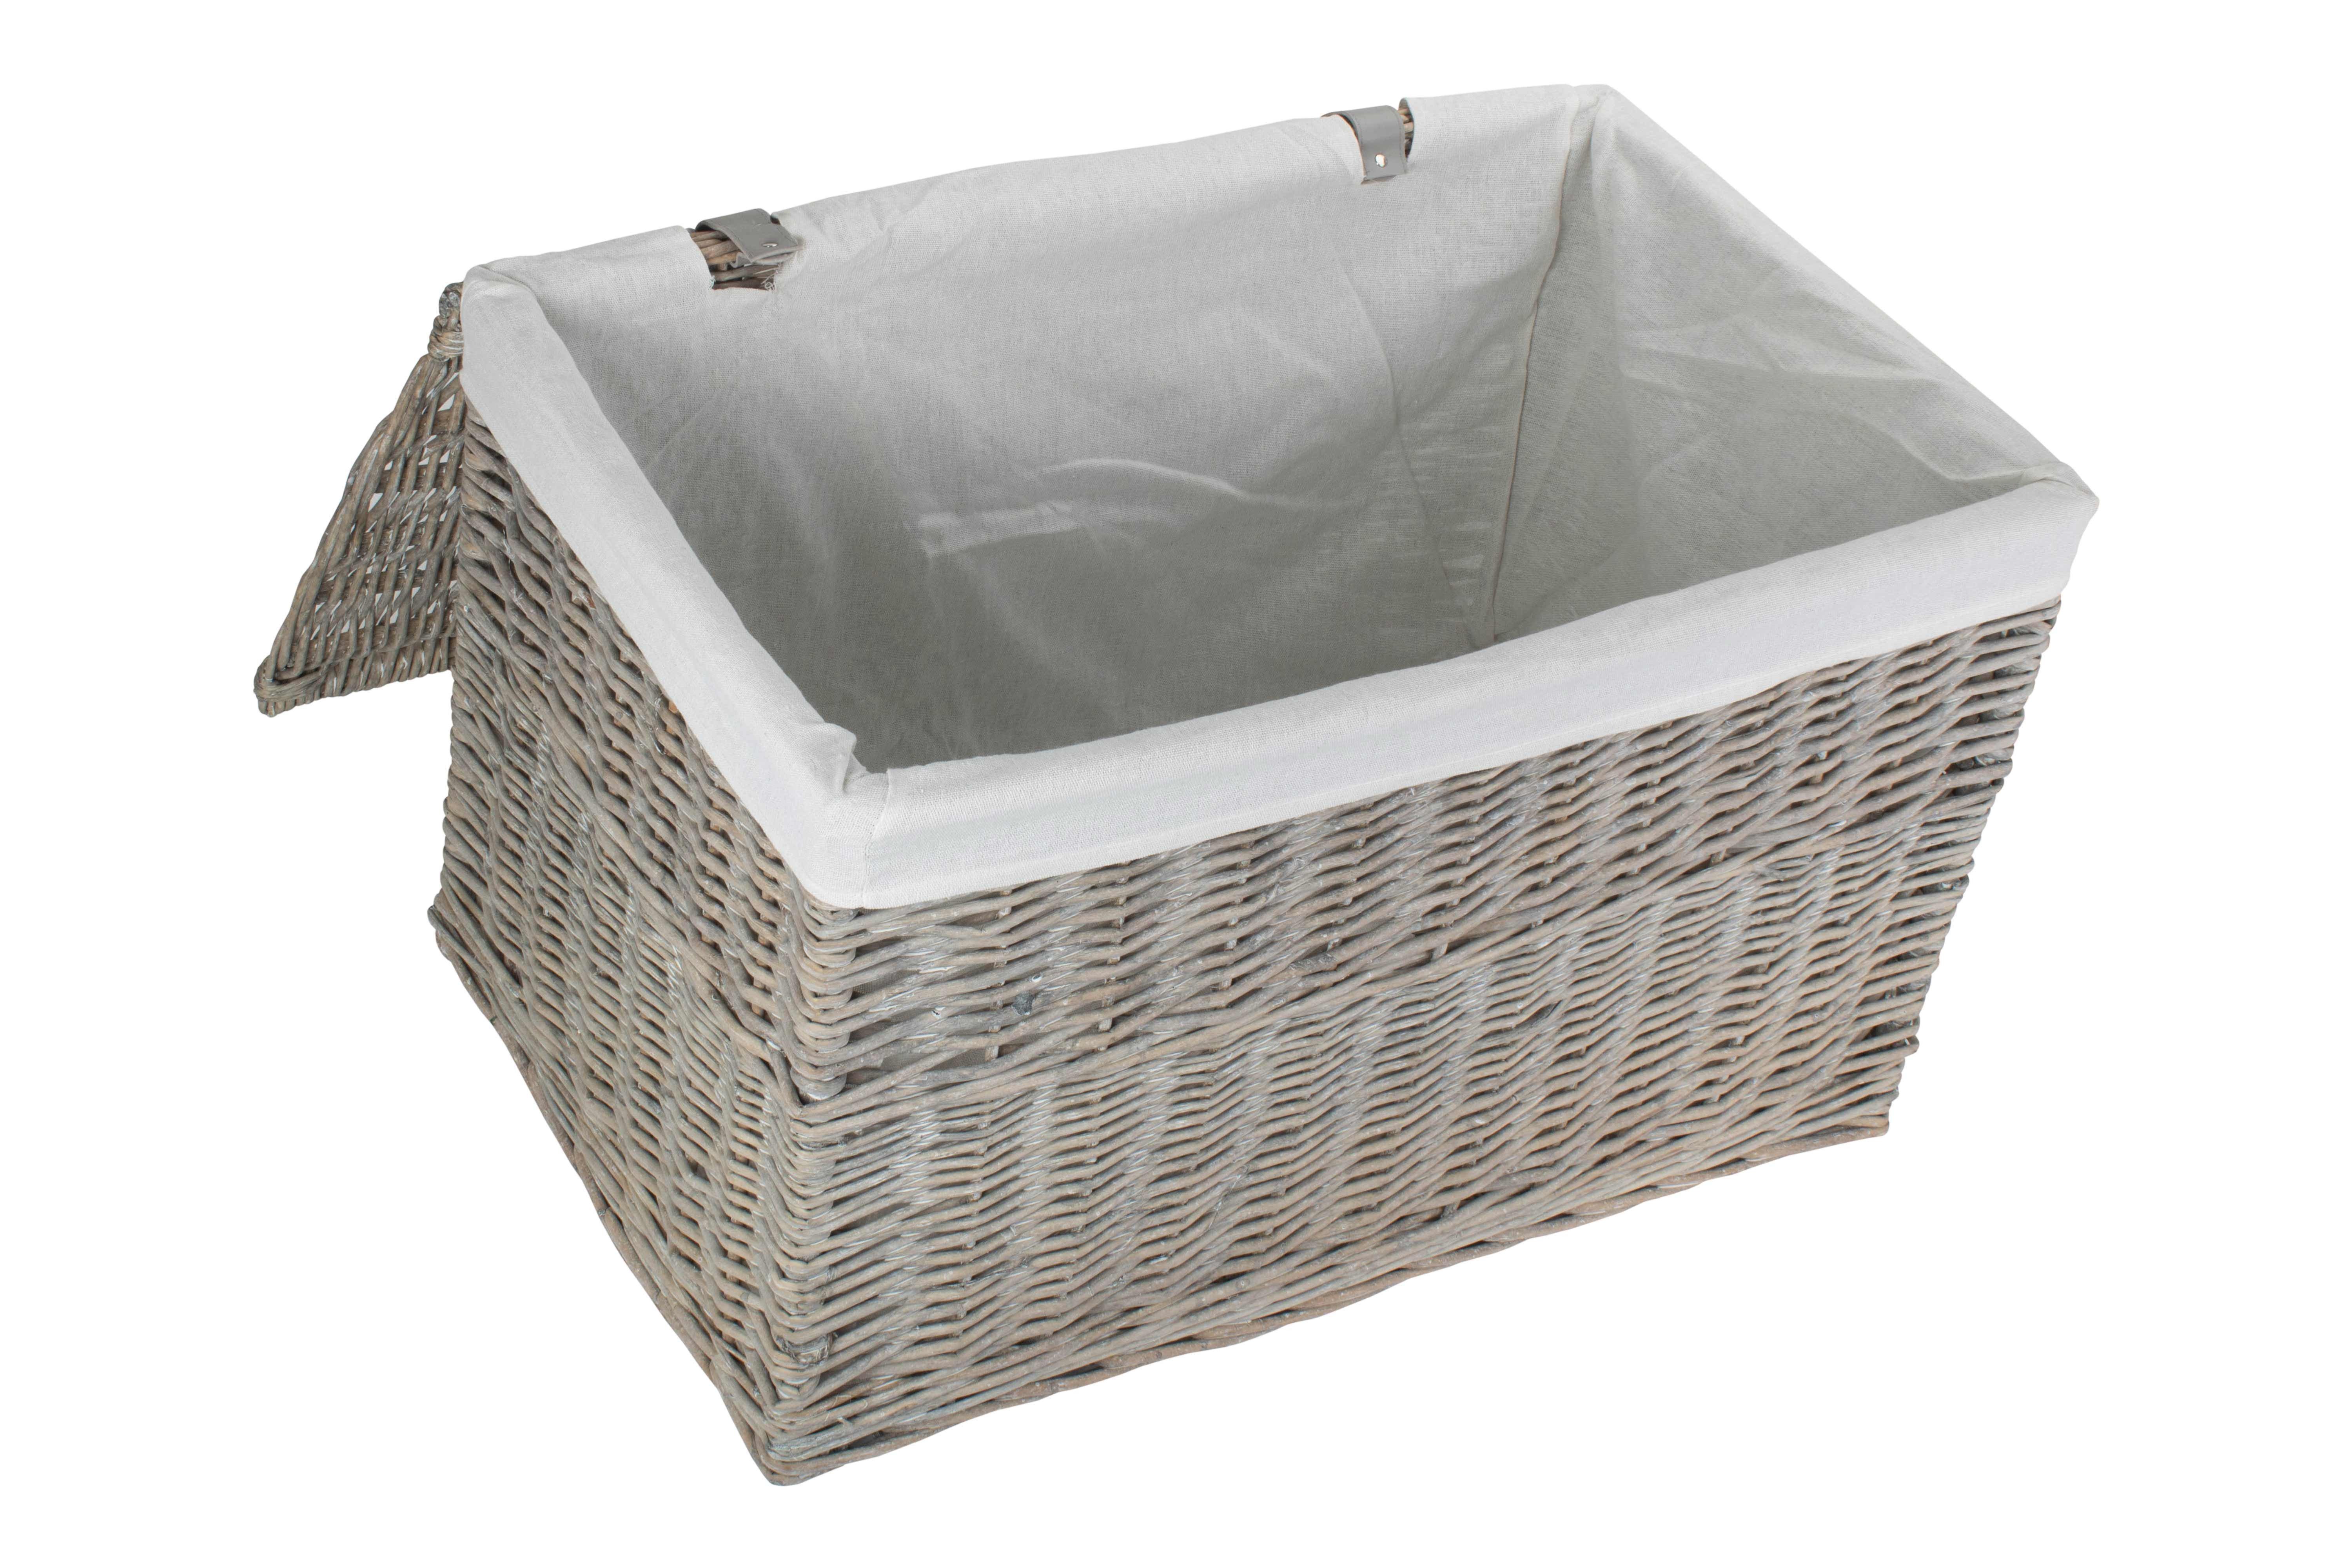 Wicker Grey Wash Finish Storage Hamper Basket